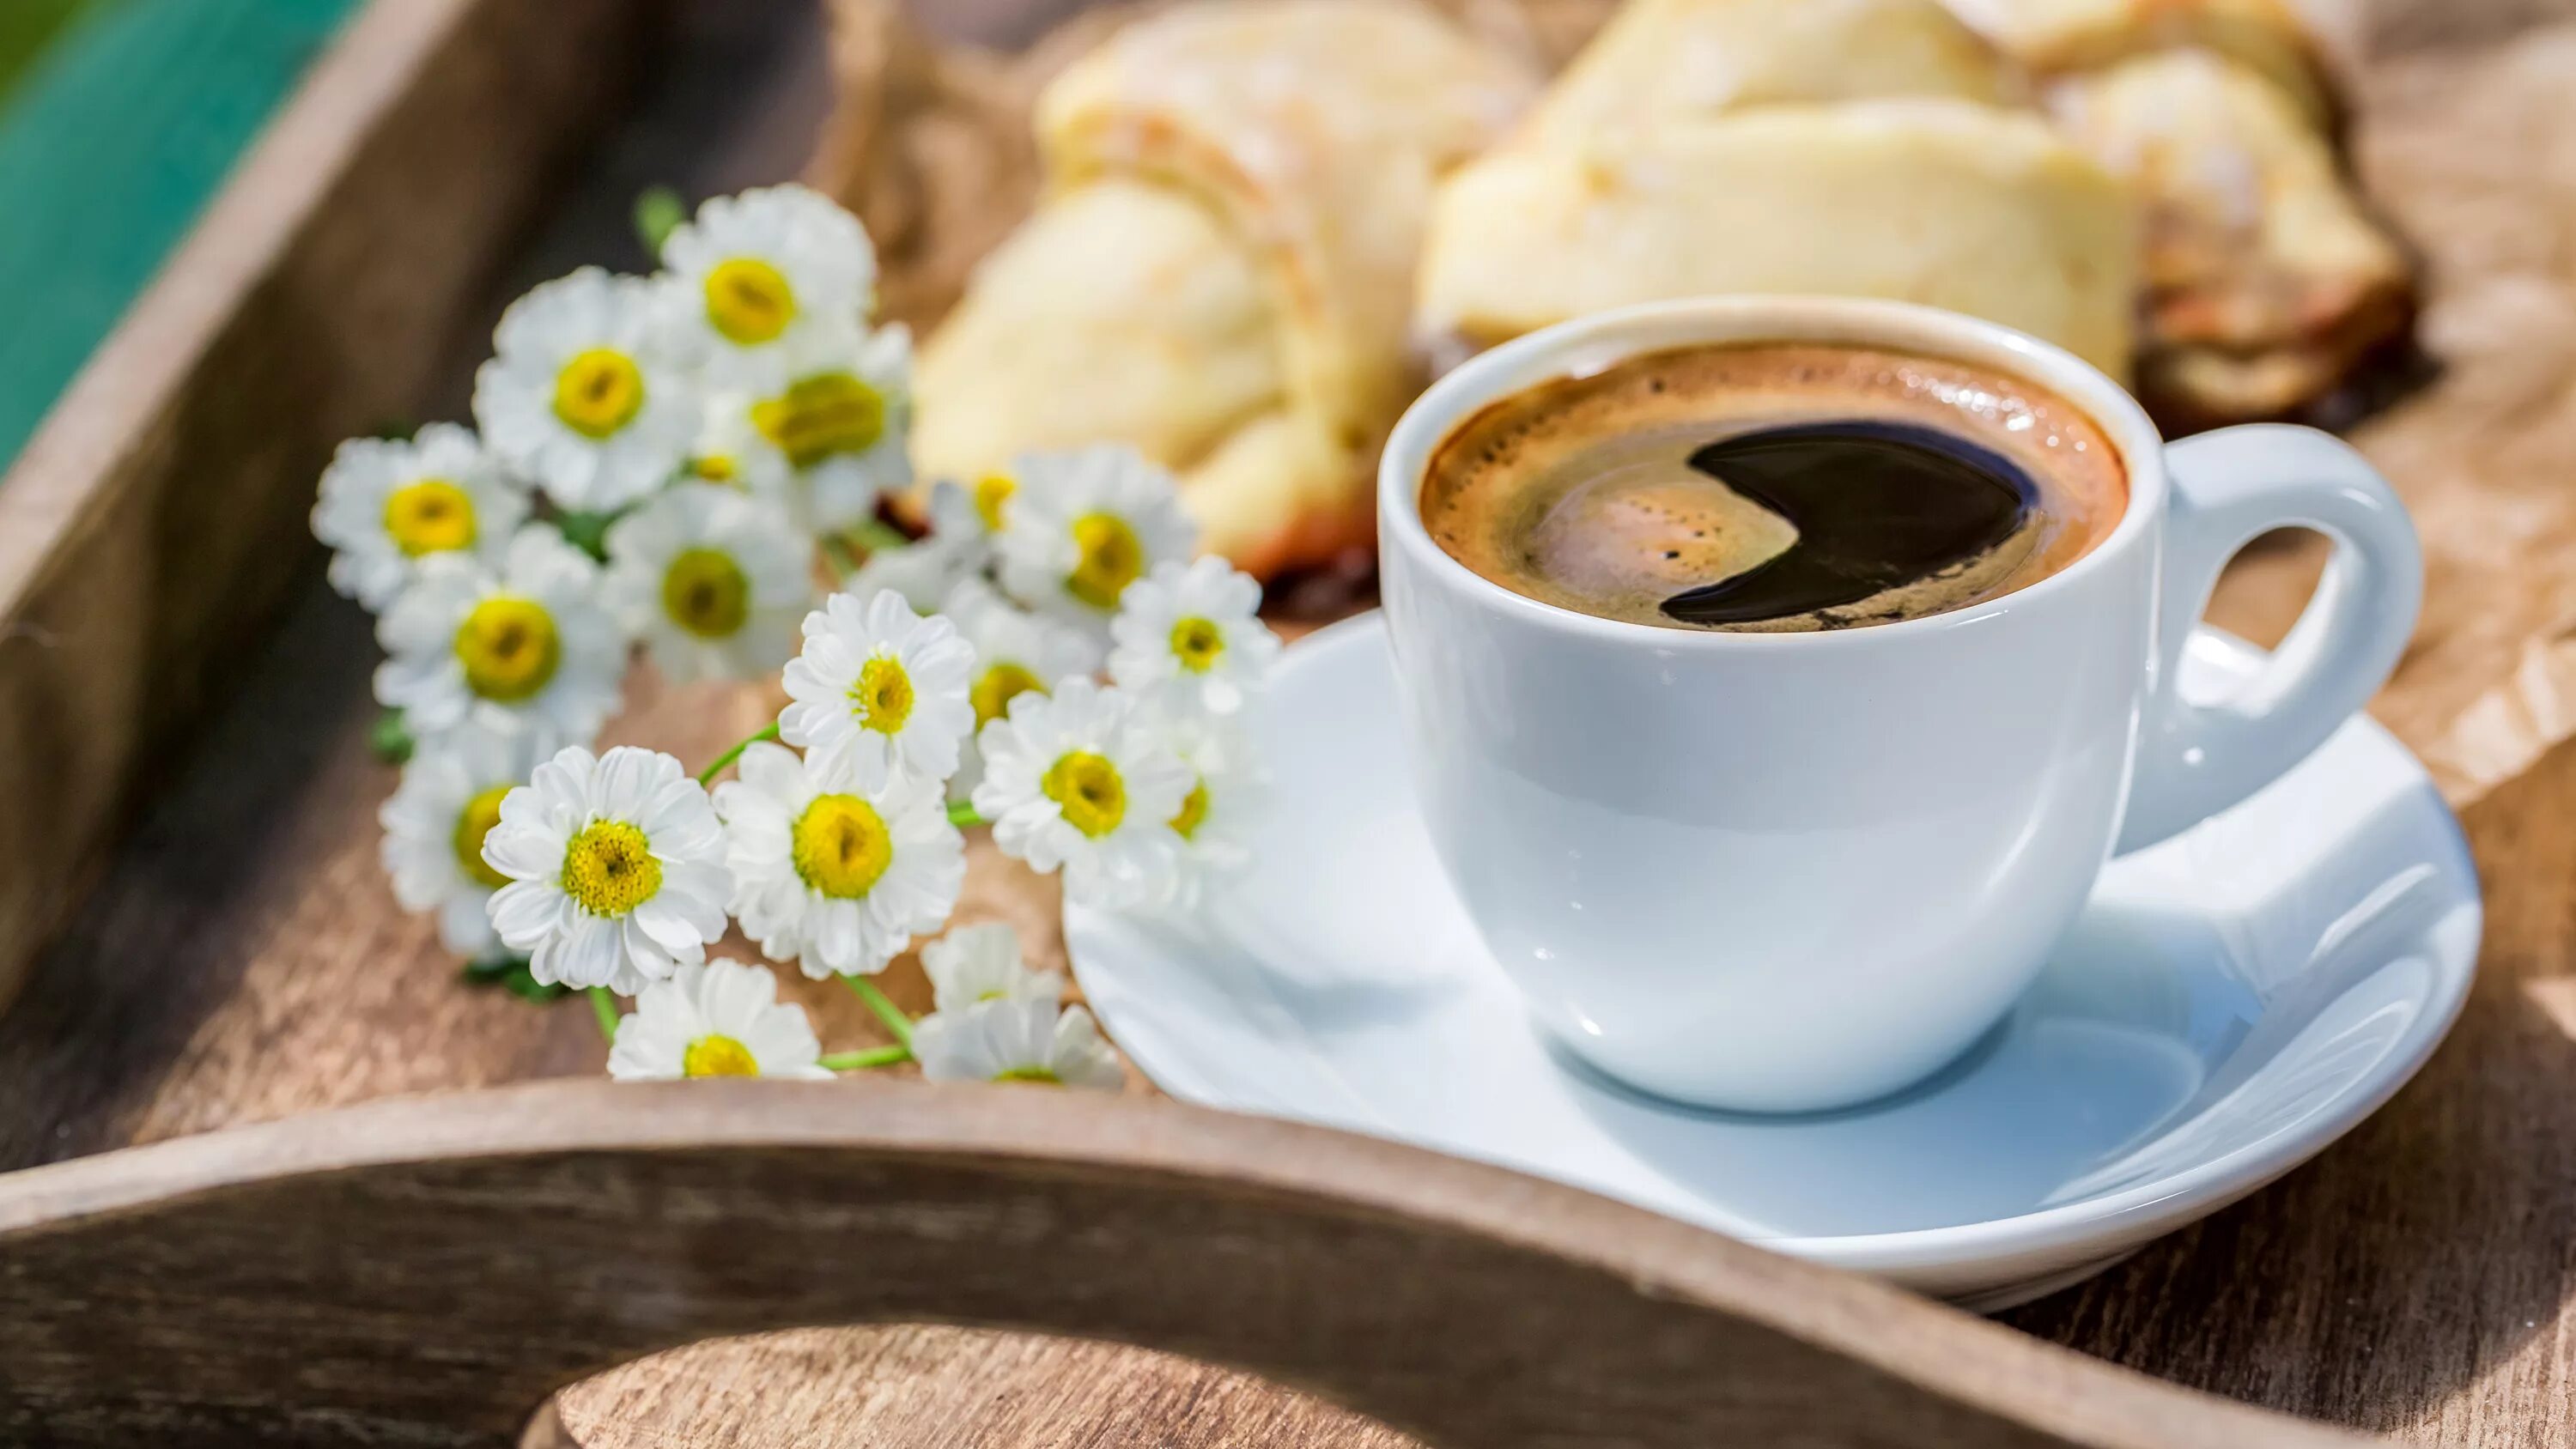 Morning. Утро кофе. Чашка утреннего кофе. Доброе утро кофе. Кофе и цветы.